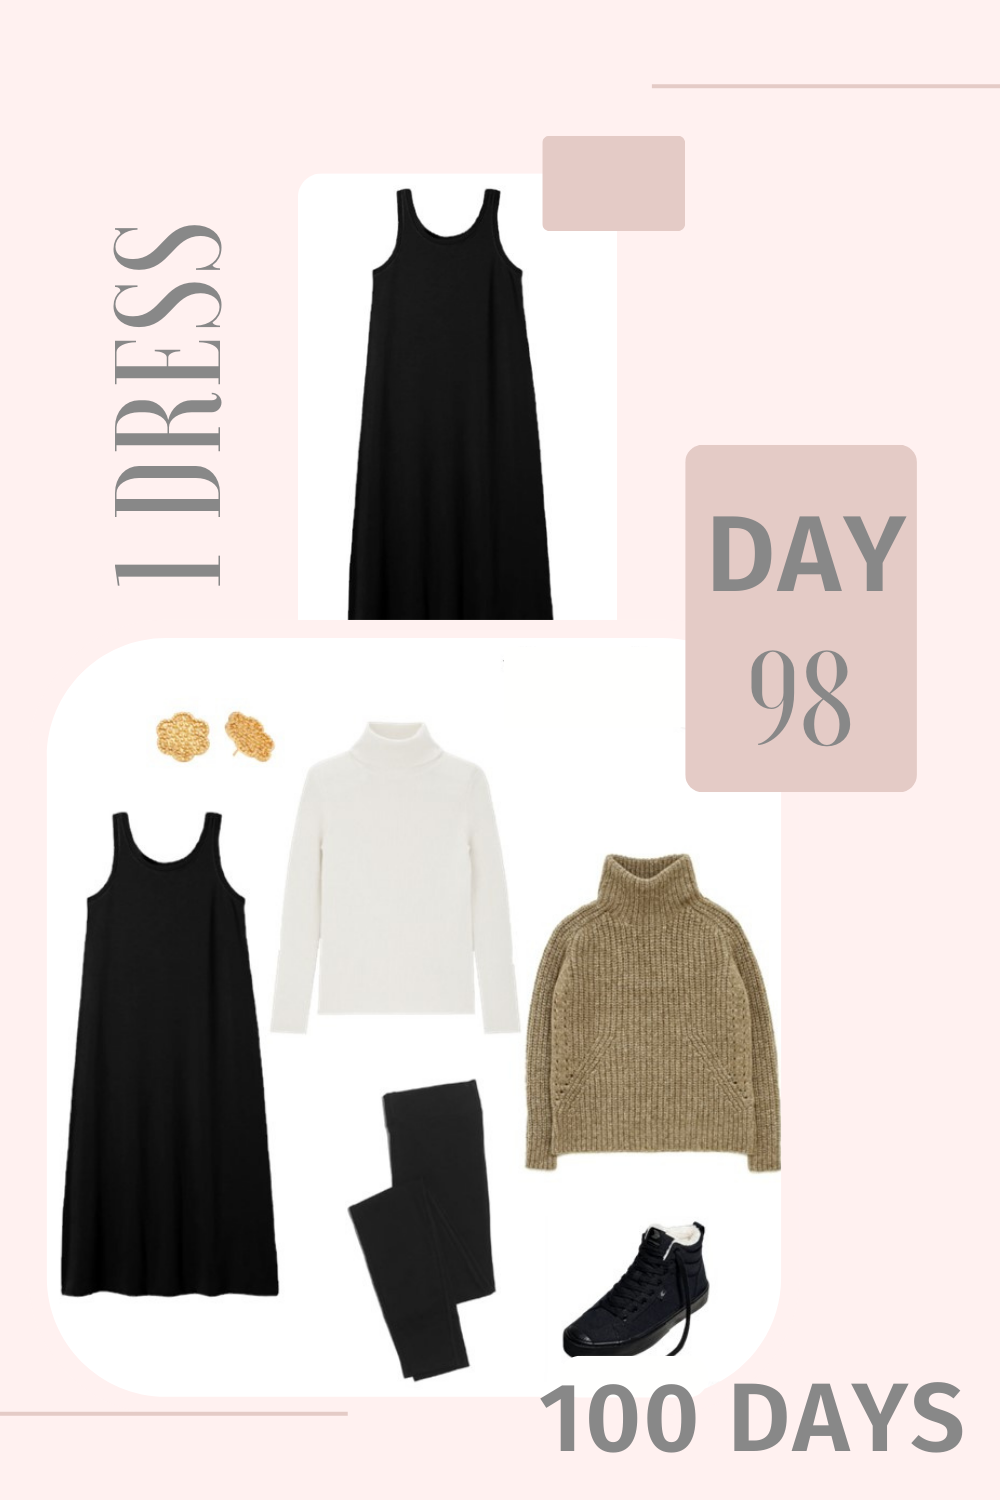 1 Dress 100 Days - Day 98